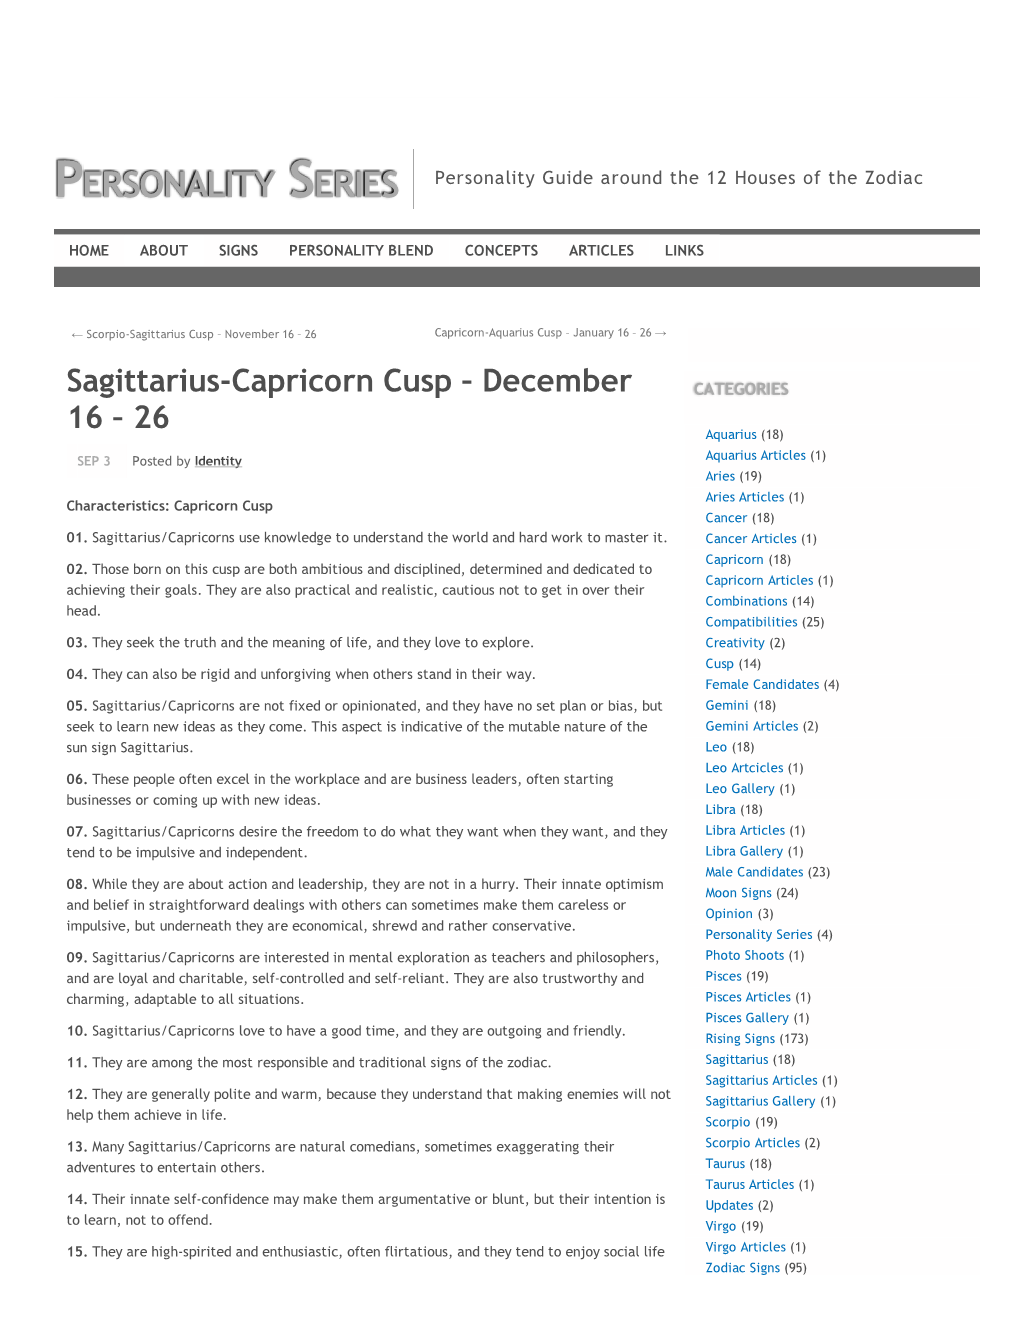 Sagittarius-Capricorn Cusp – December CATEGORIES 16 – 26 Aquarius (18)